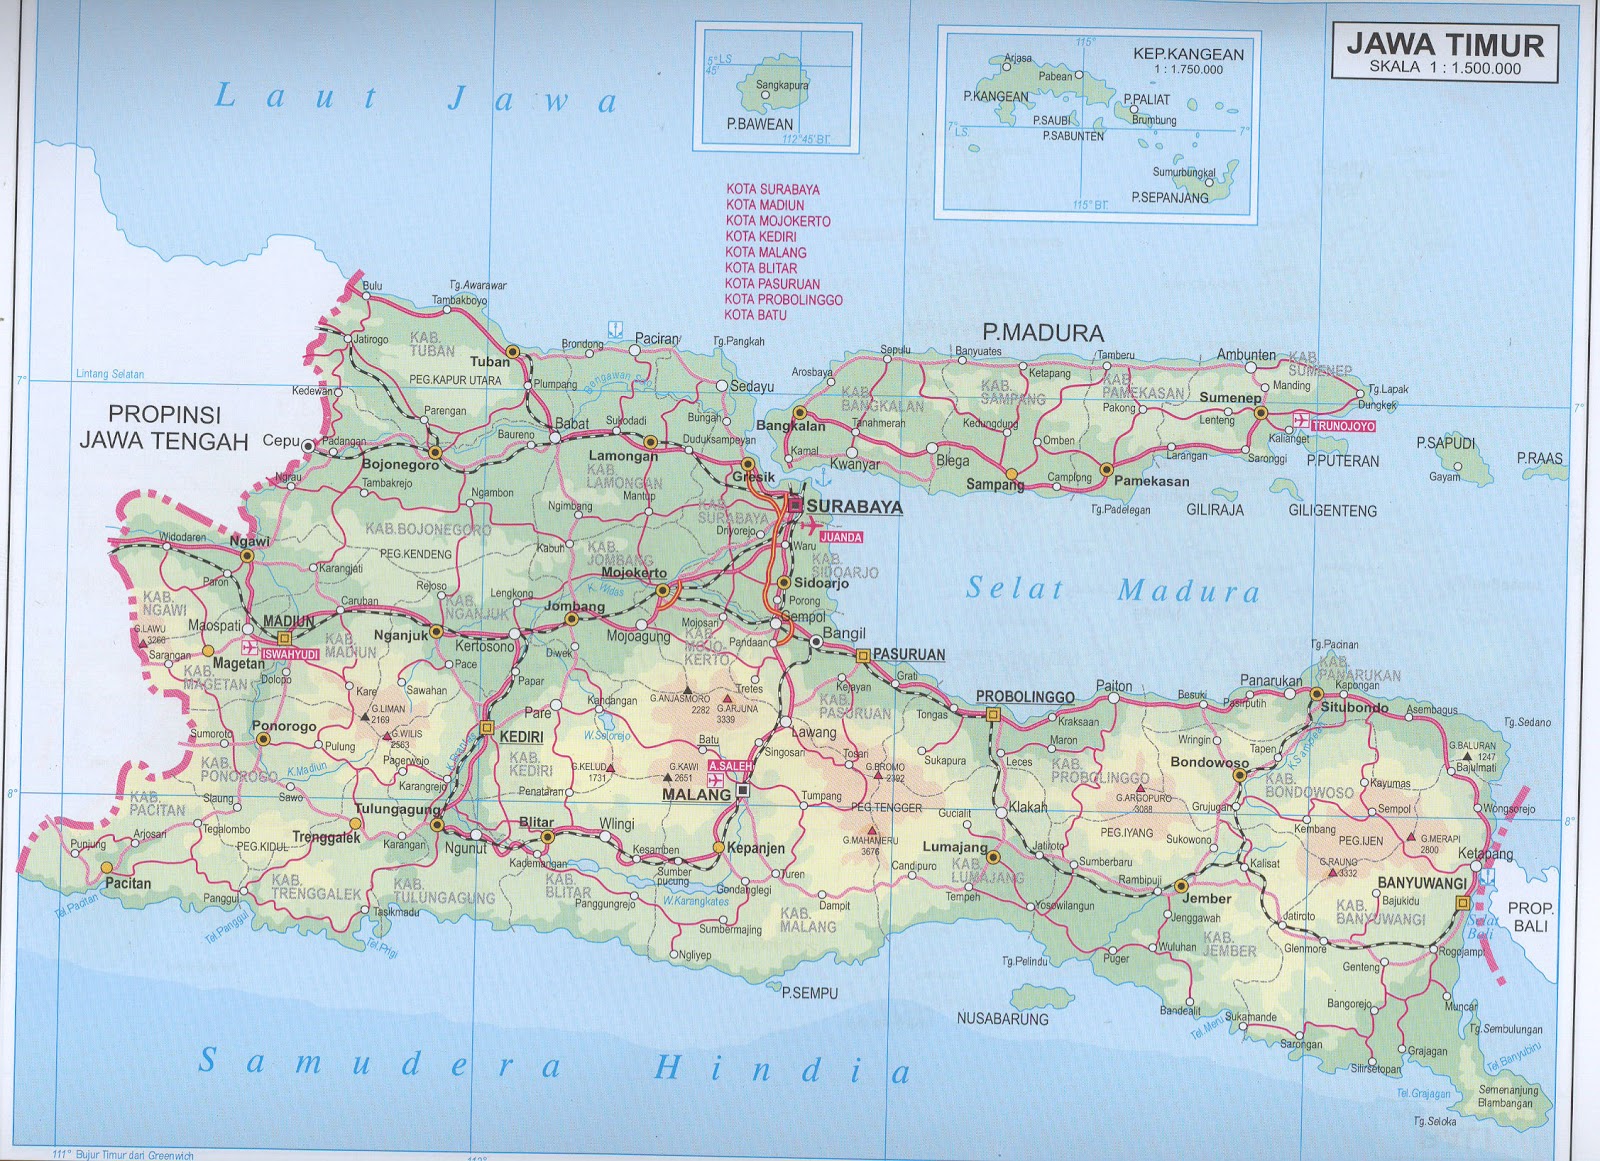 AMAZING INDONESIA jawa  timur  maps 